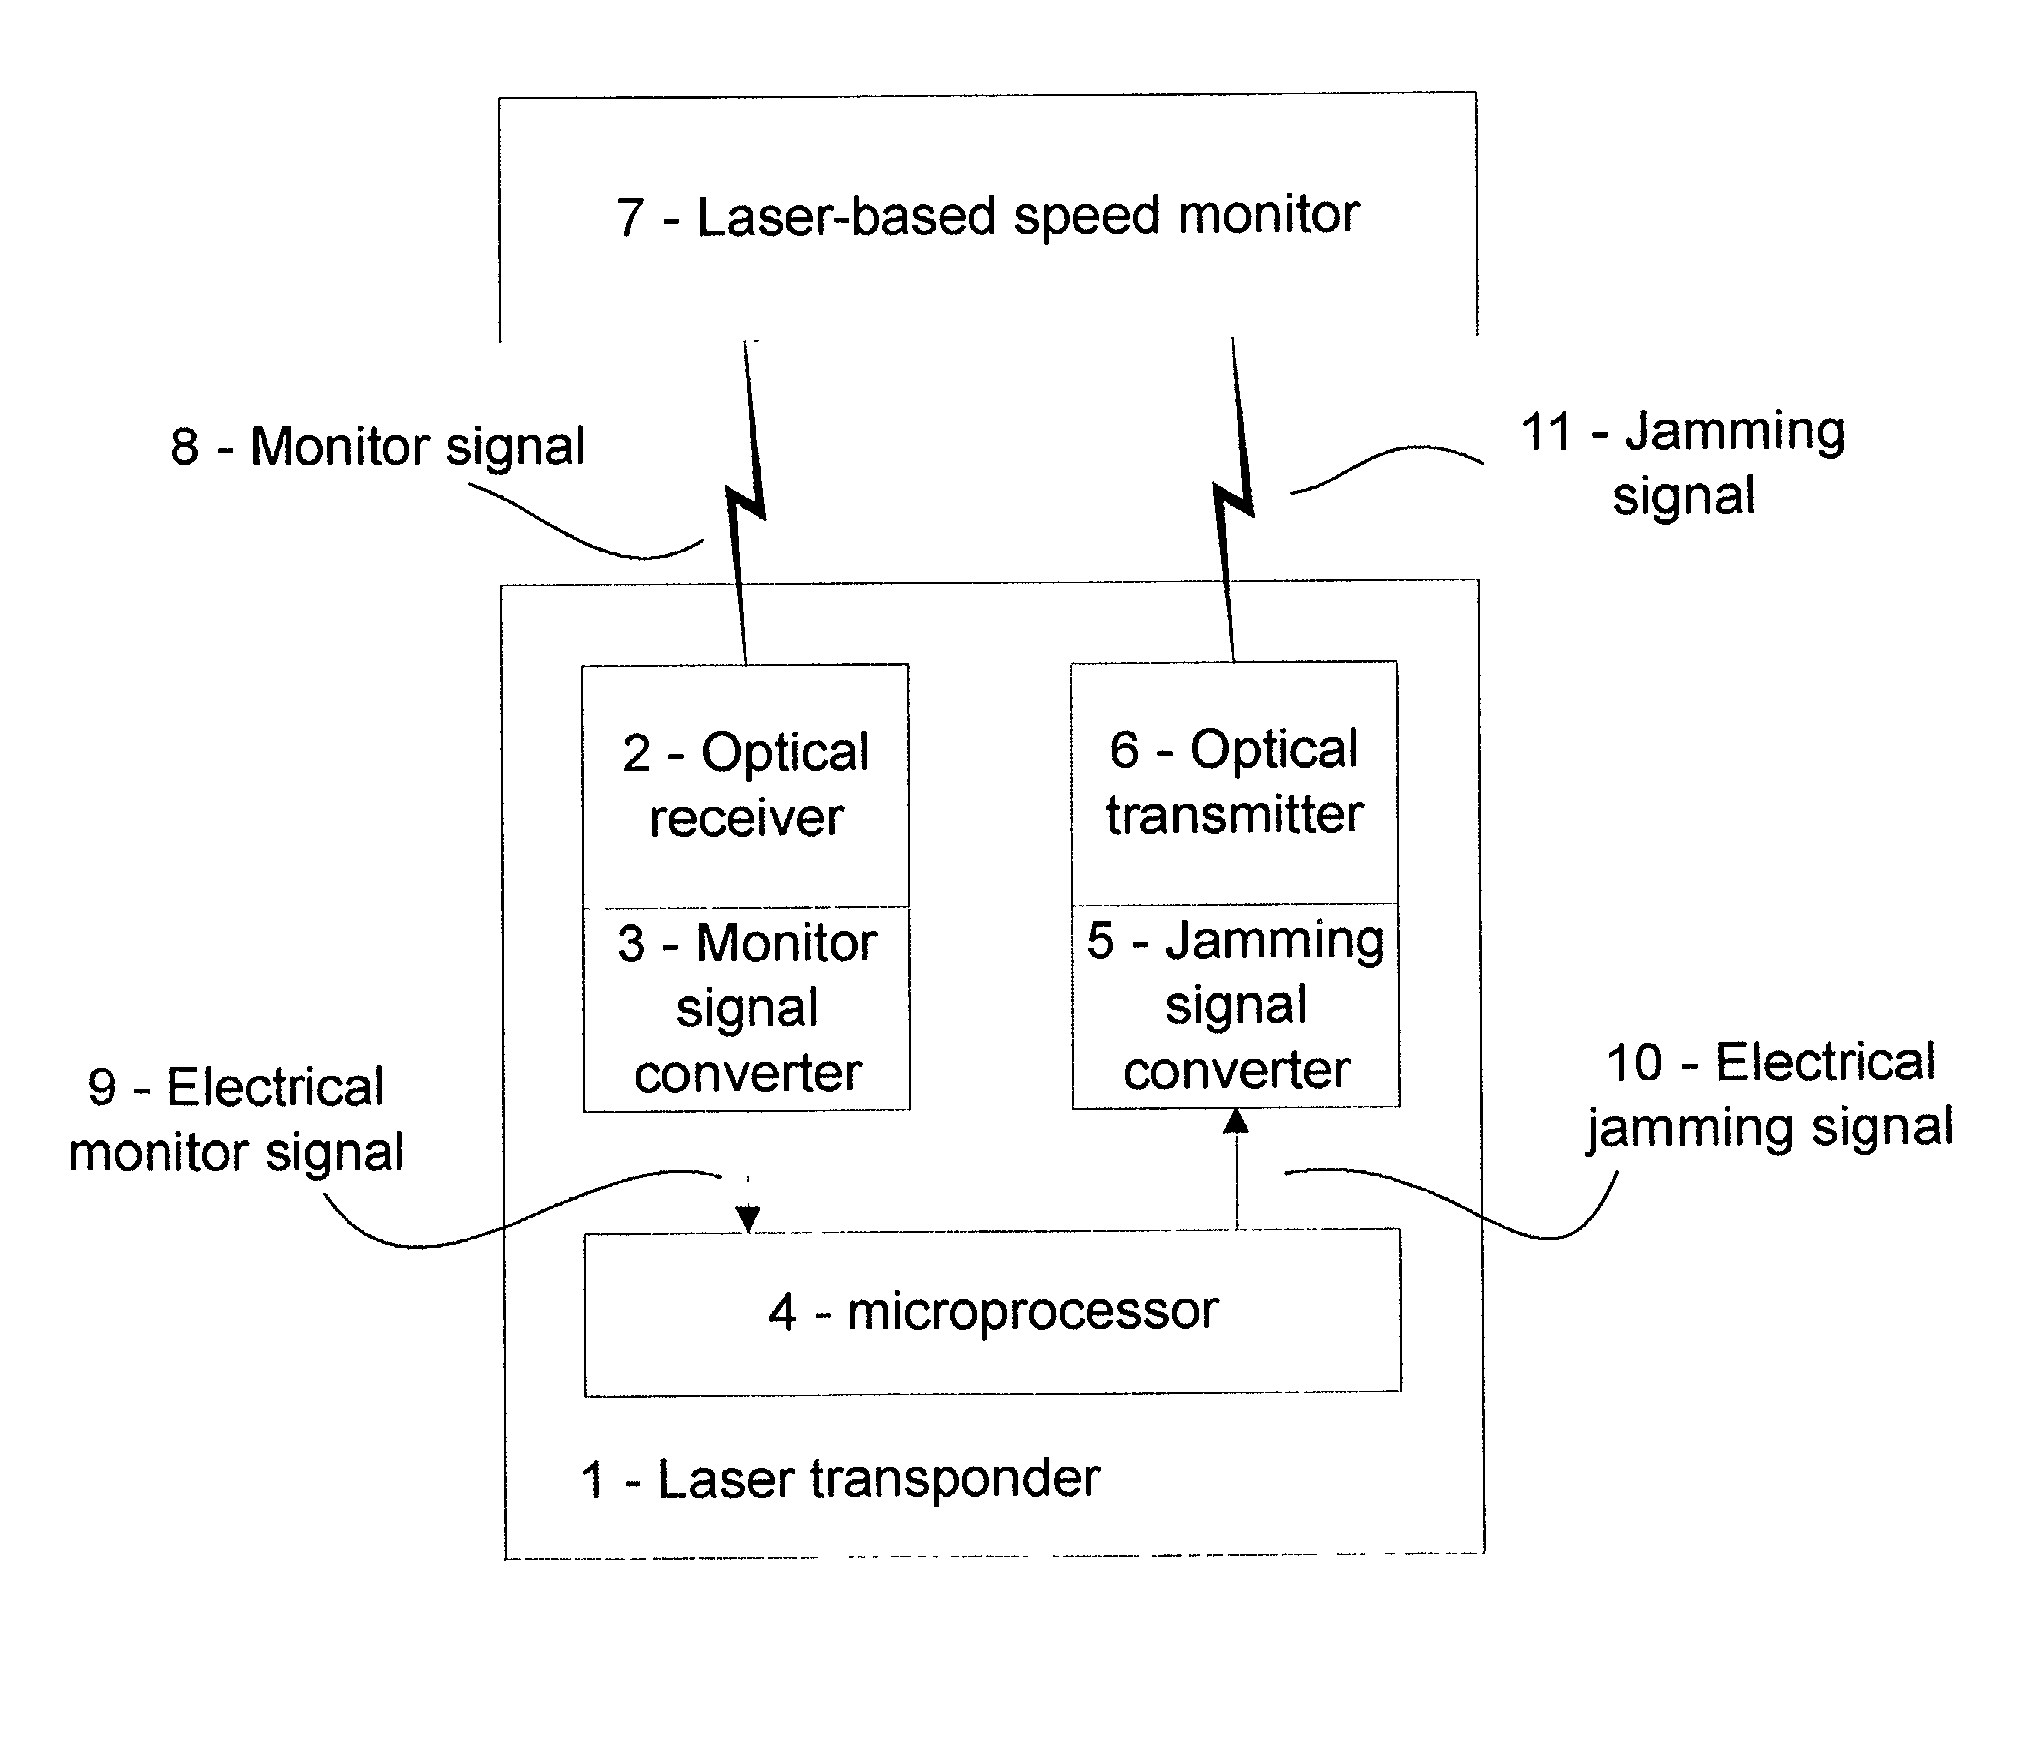 Laser transponder